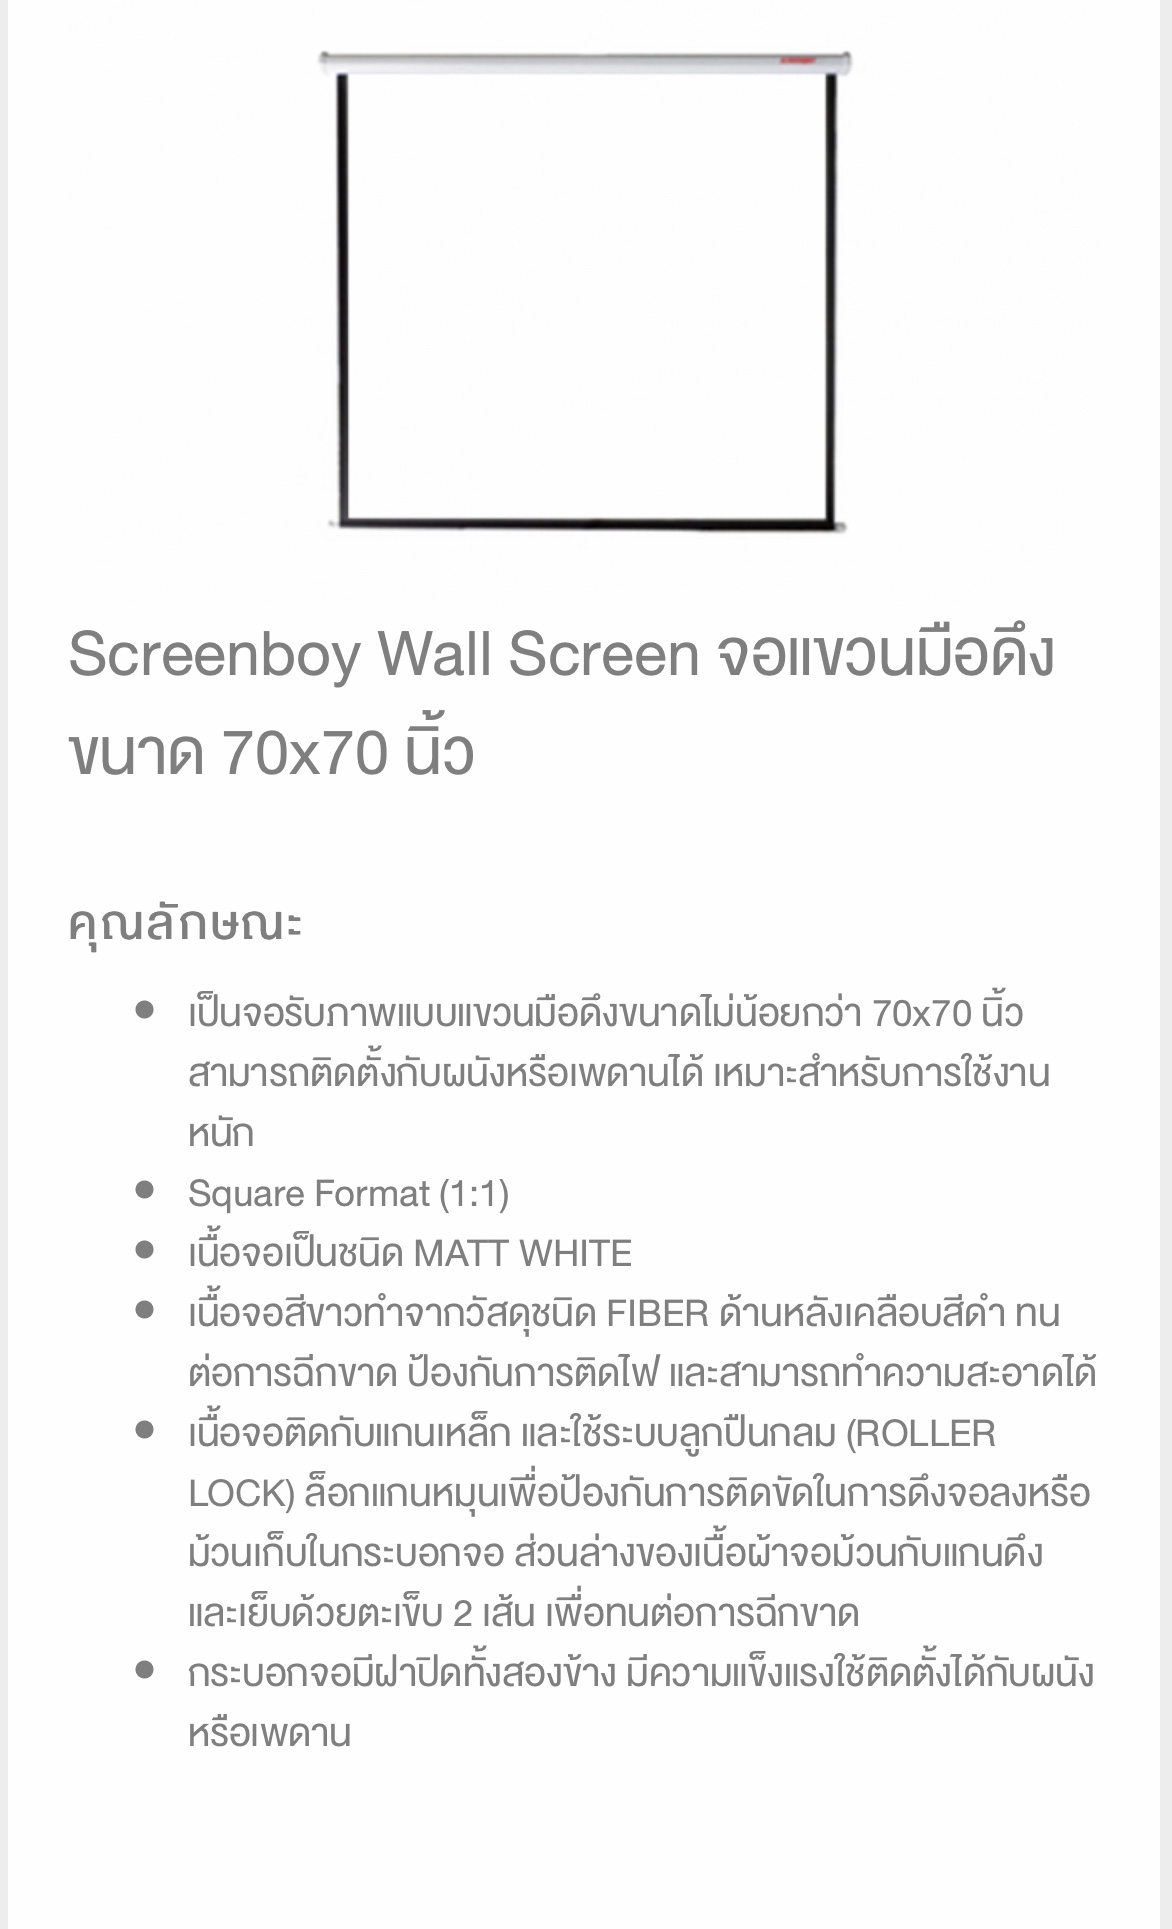 Screen Wall  70"x70" (1:1)